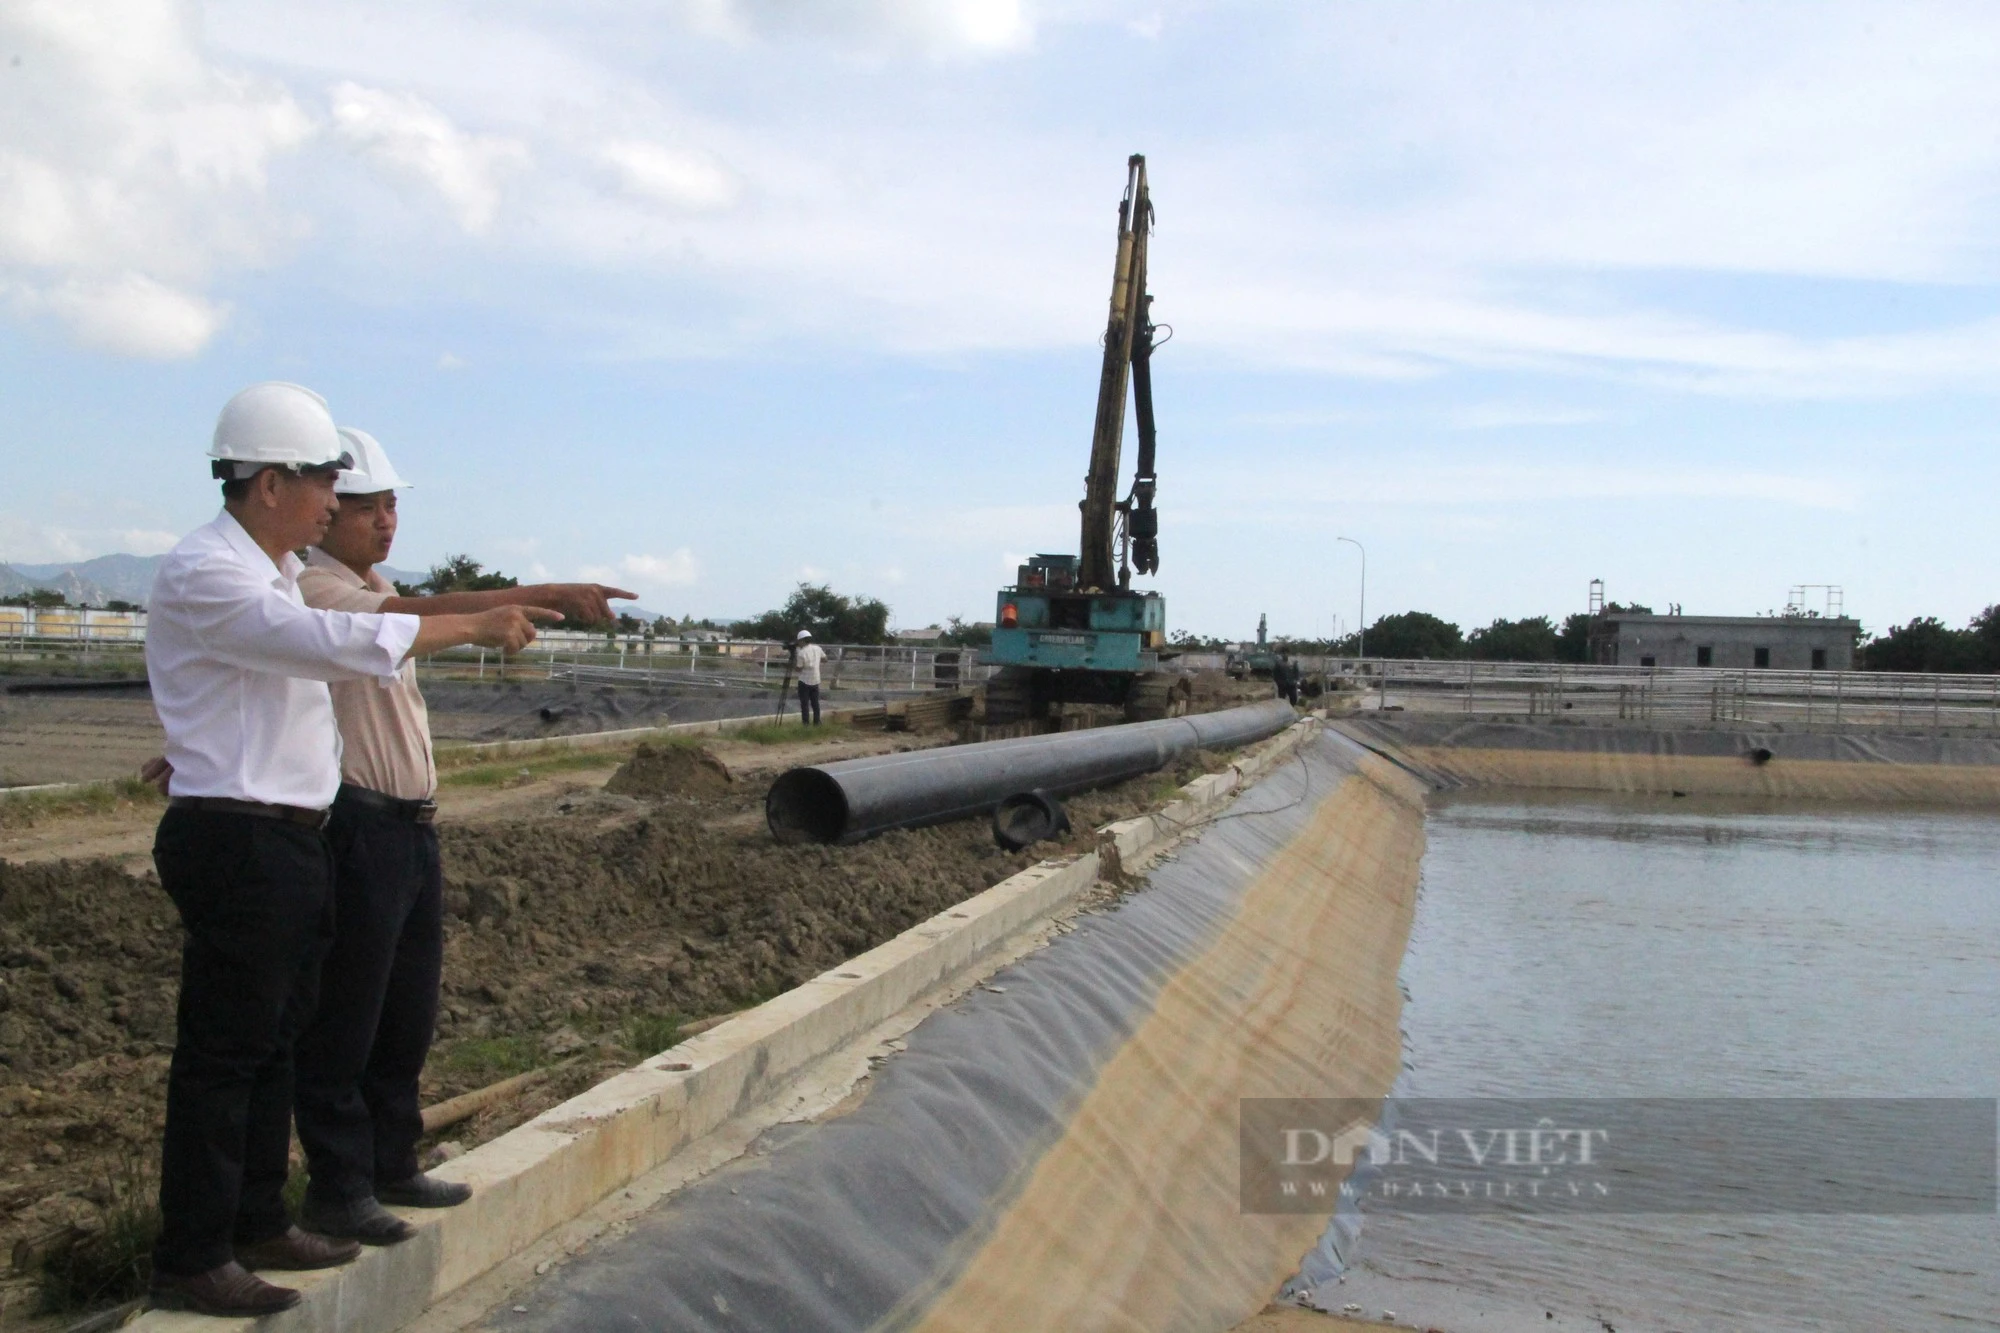 Dự án triệu đô giúp thoát nước, cải thiện vệ sinh môi trường bền vững ở TP. Phan Rang – Tháp Chàm như thế nào? - Ảnh 3.